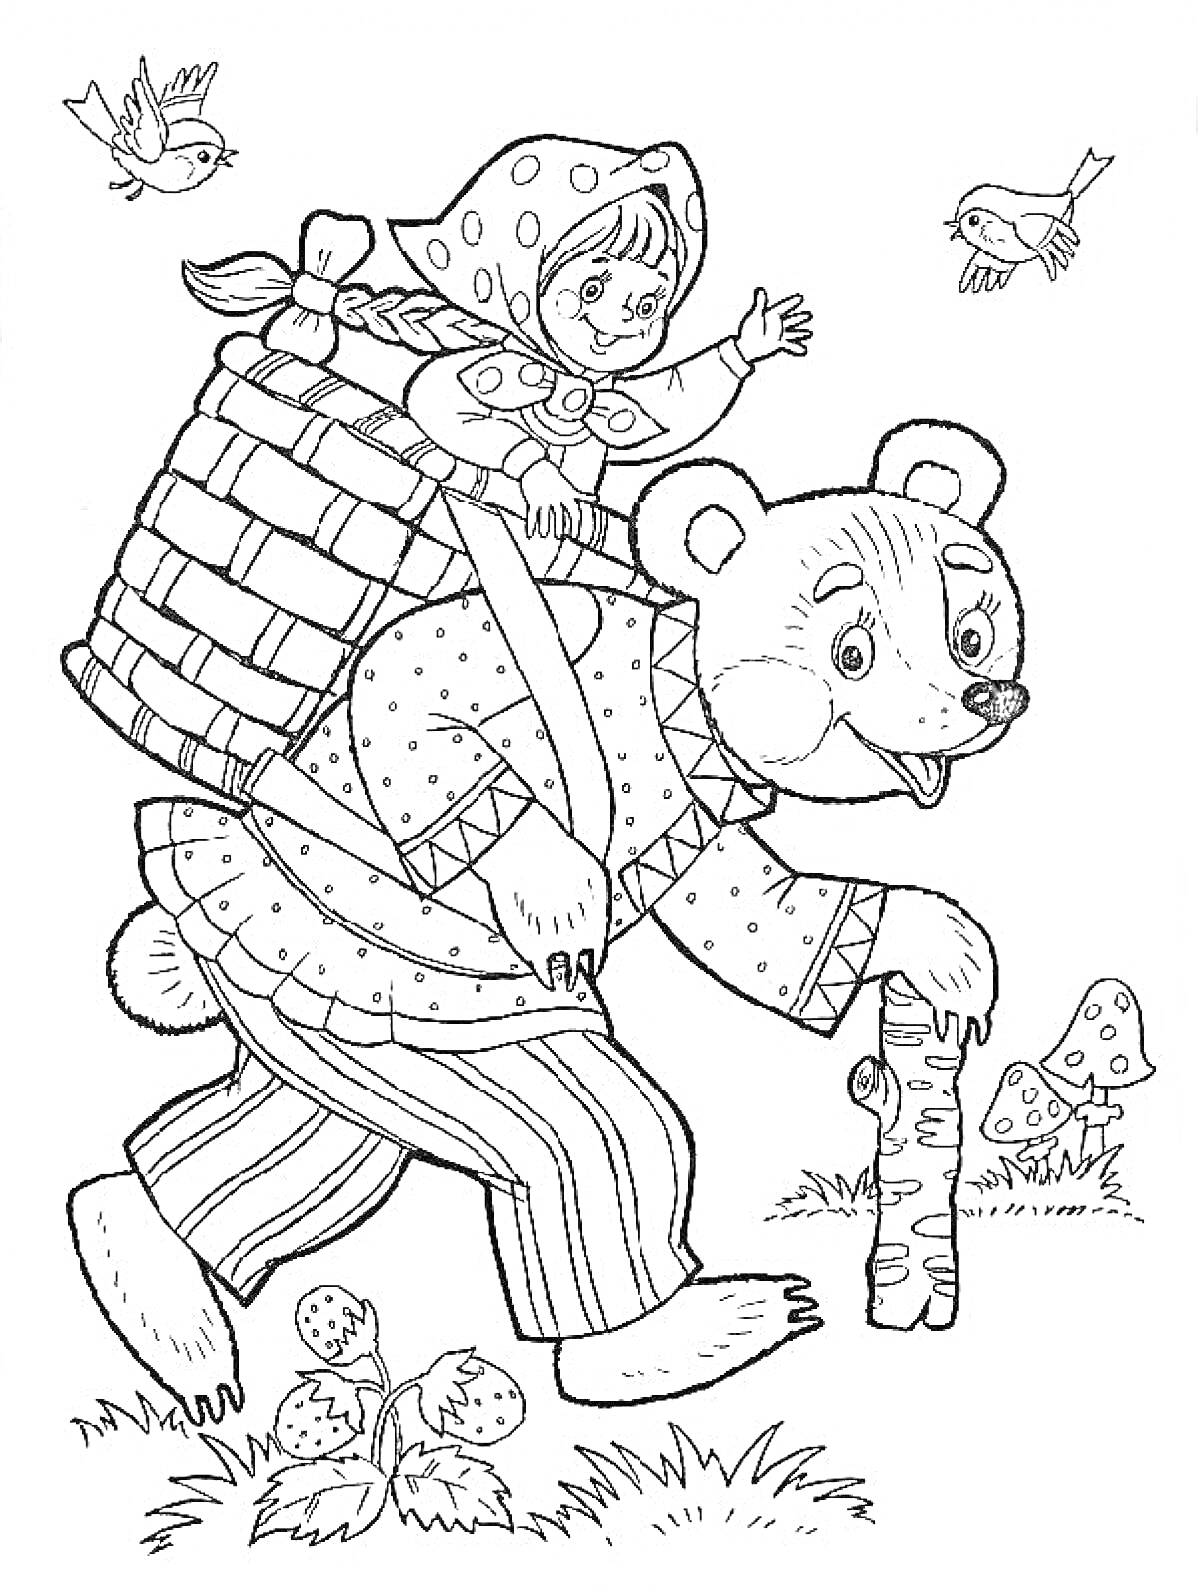 Раскраска Девочка в косынке в корзине на спине у медведя с посохом, птицы, мухоморы, клубника